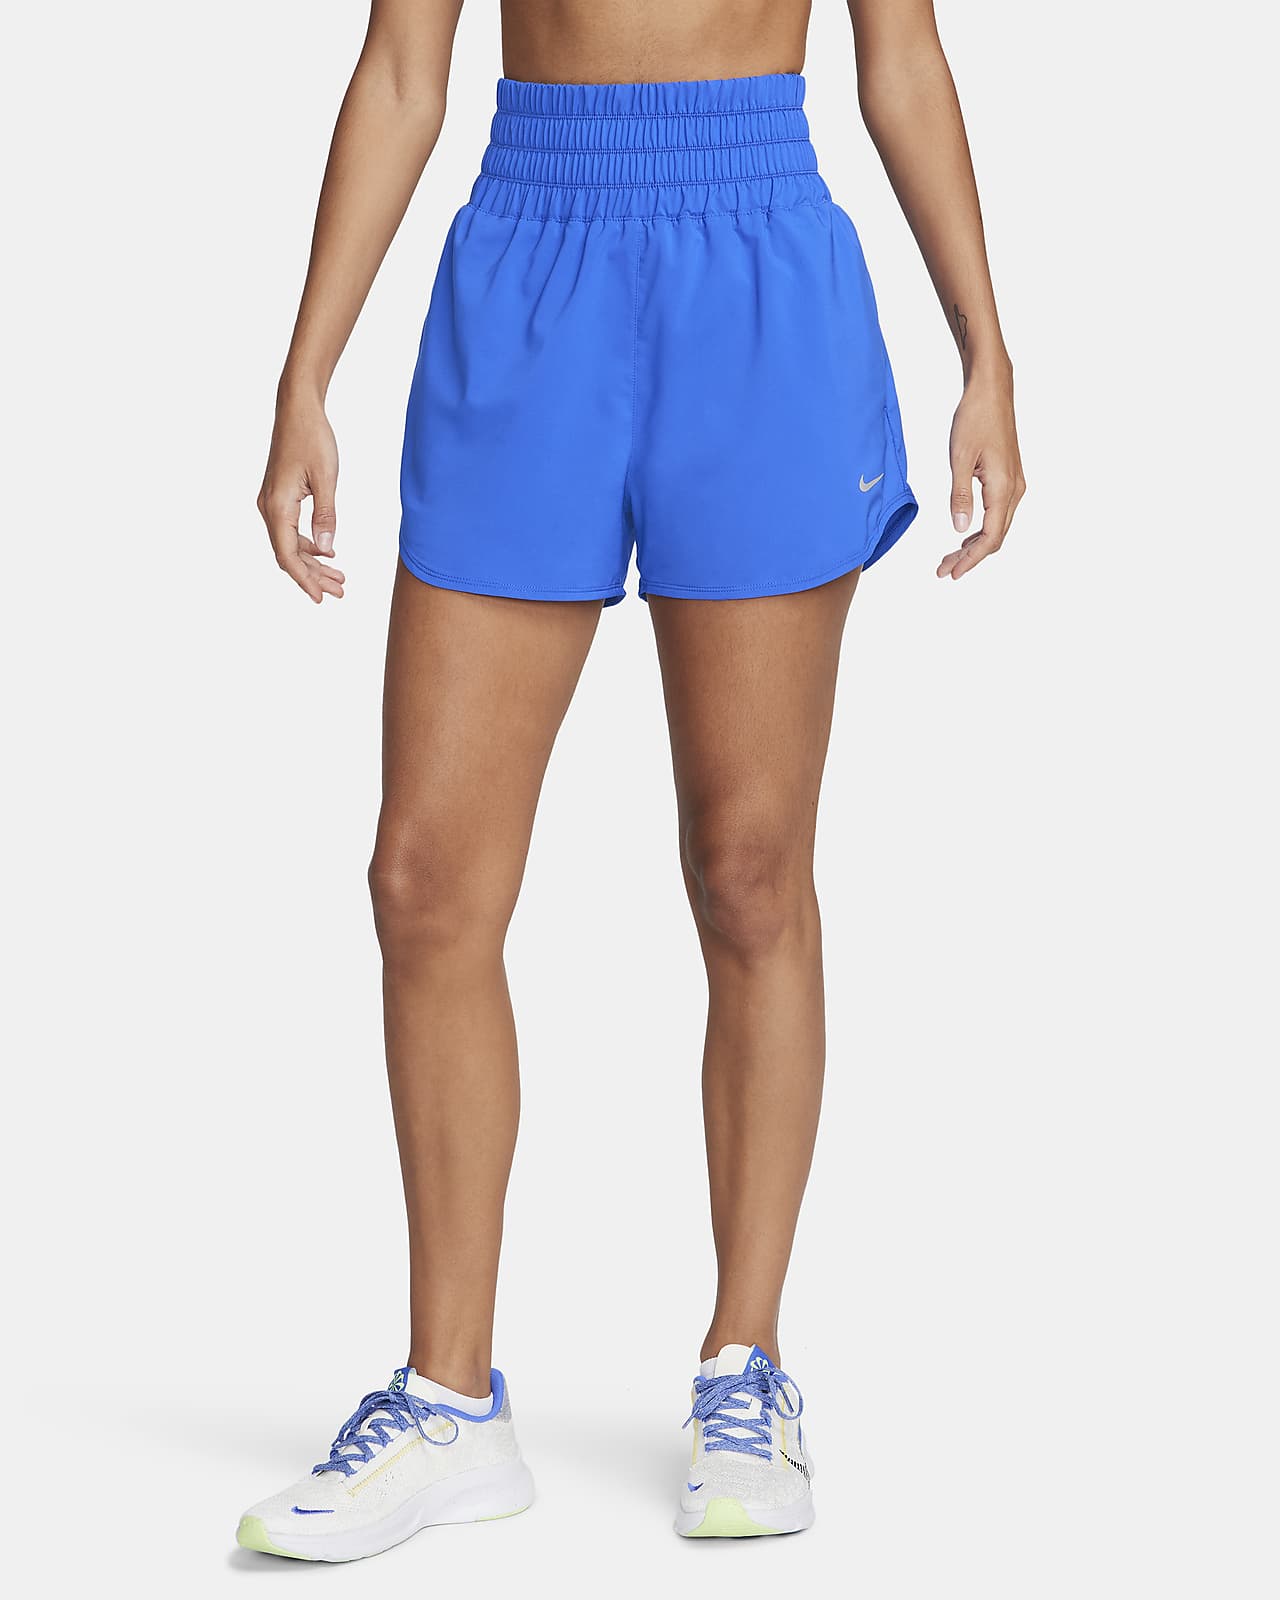 Nike One Pantalons curts Dri-FIT de cintura ultraalta amb eslip incorporat de 8 cm - Dona